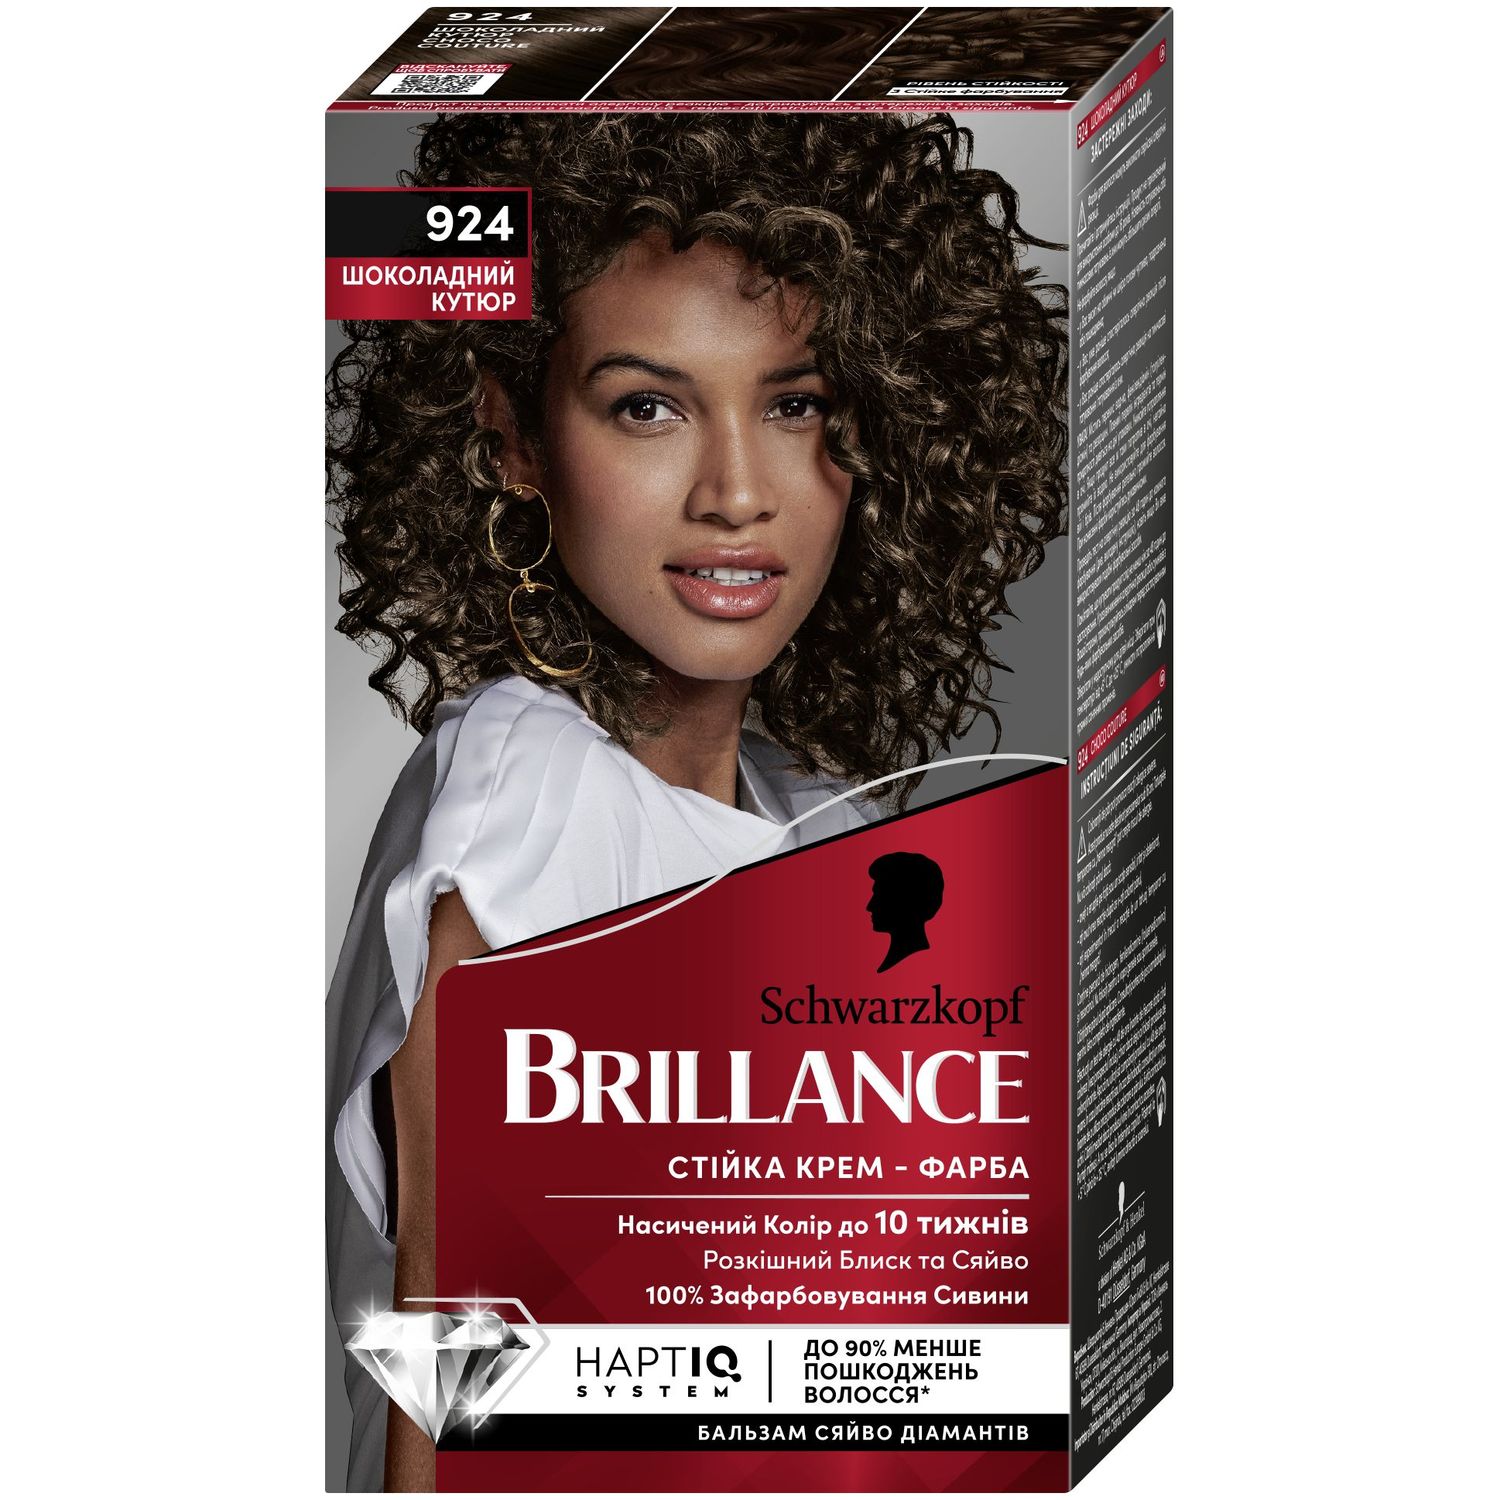 Краска для волос Brillance, тон 924 Шоколадний кутюр, 142,5 мл - фото 1